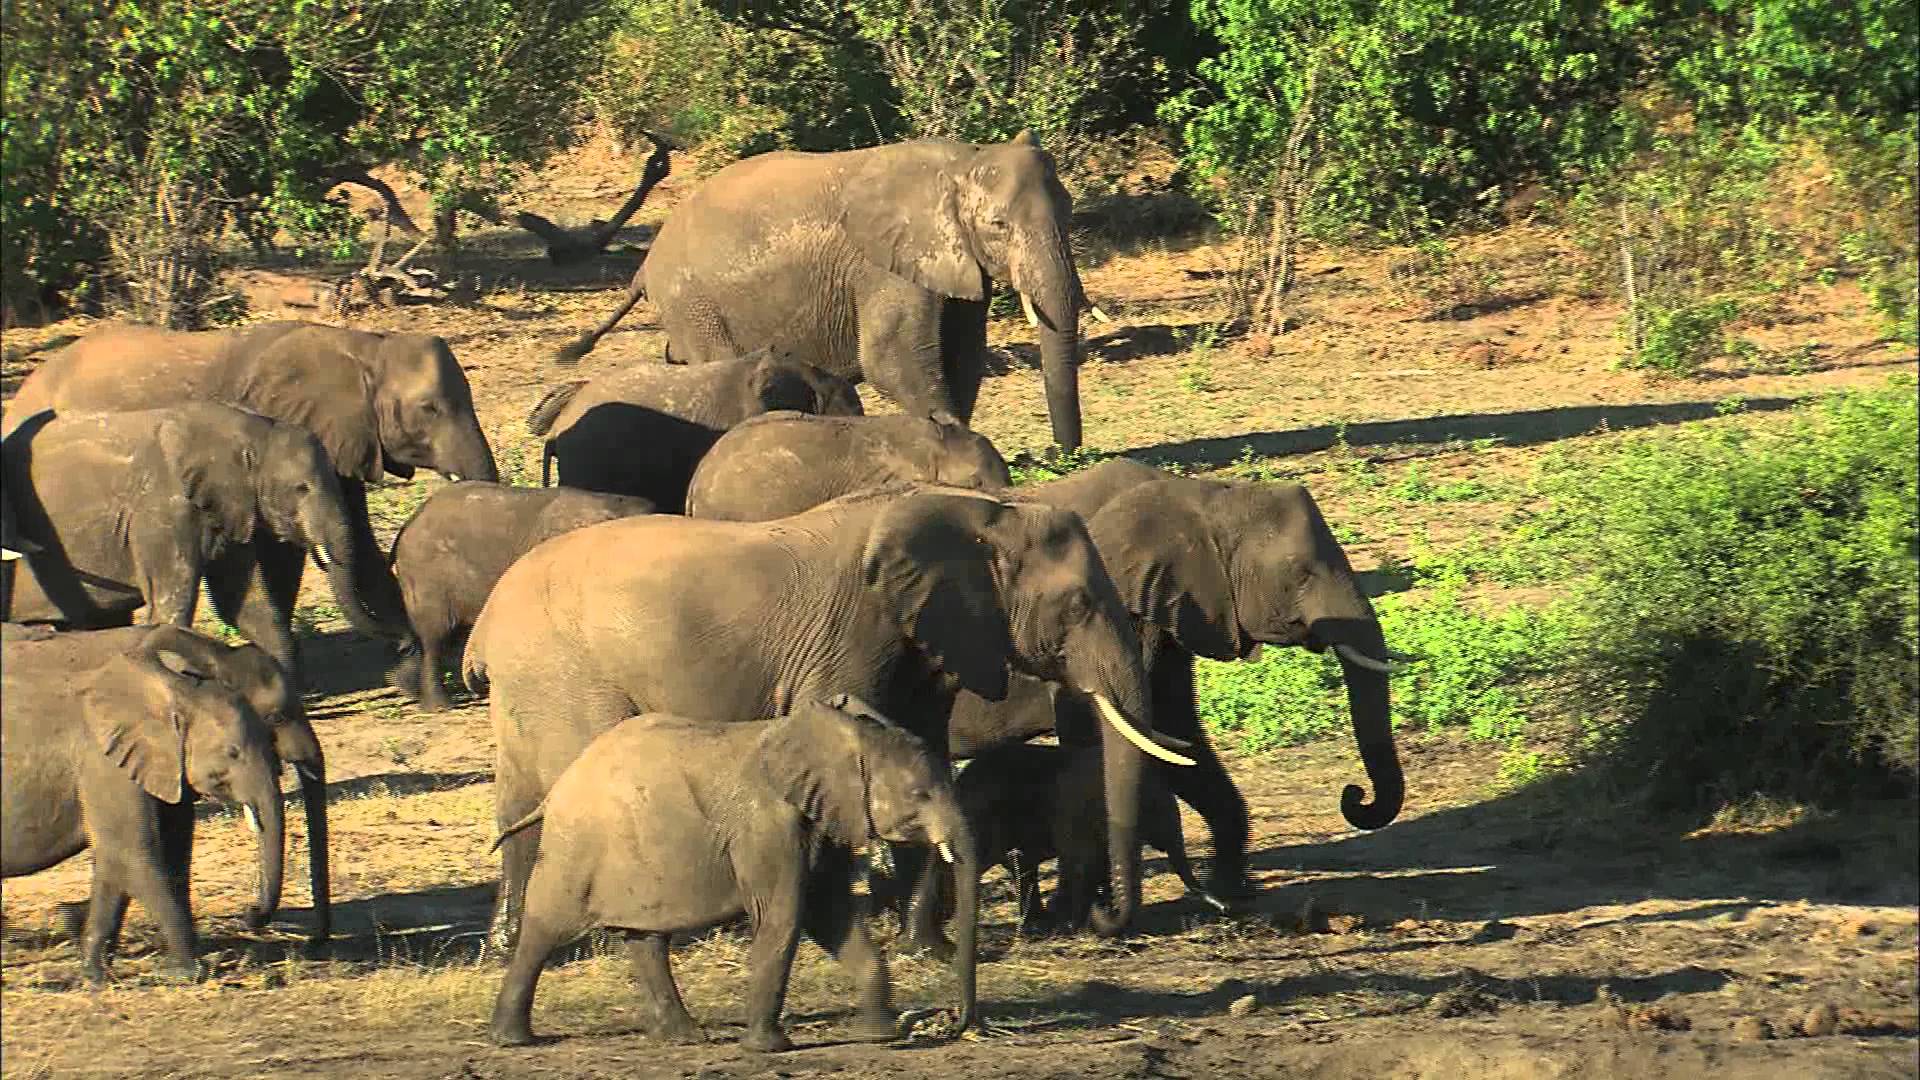 Elephants in Botswana - YouTube